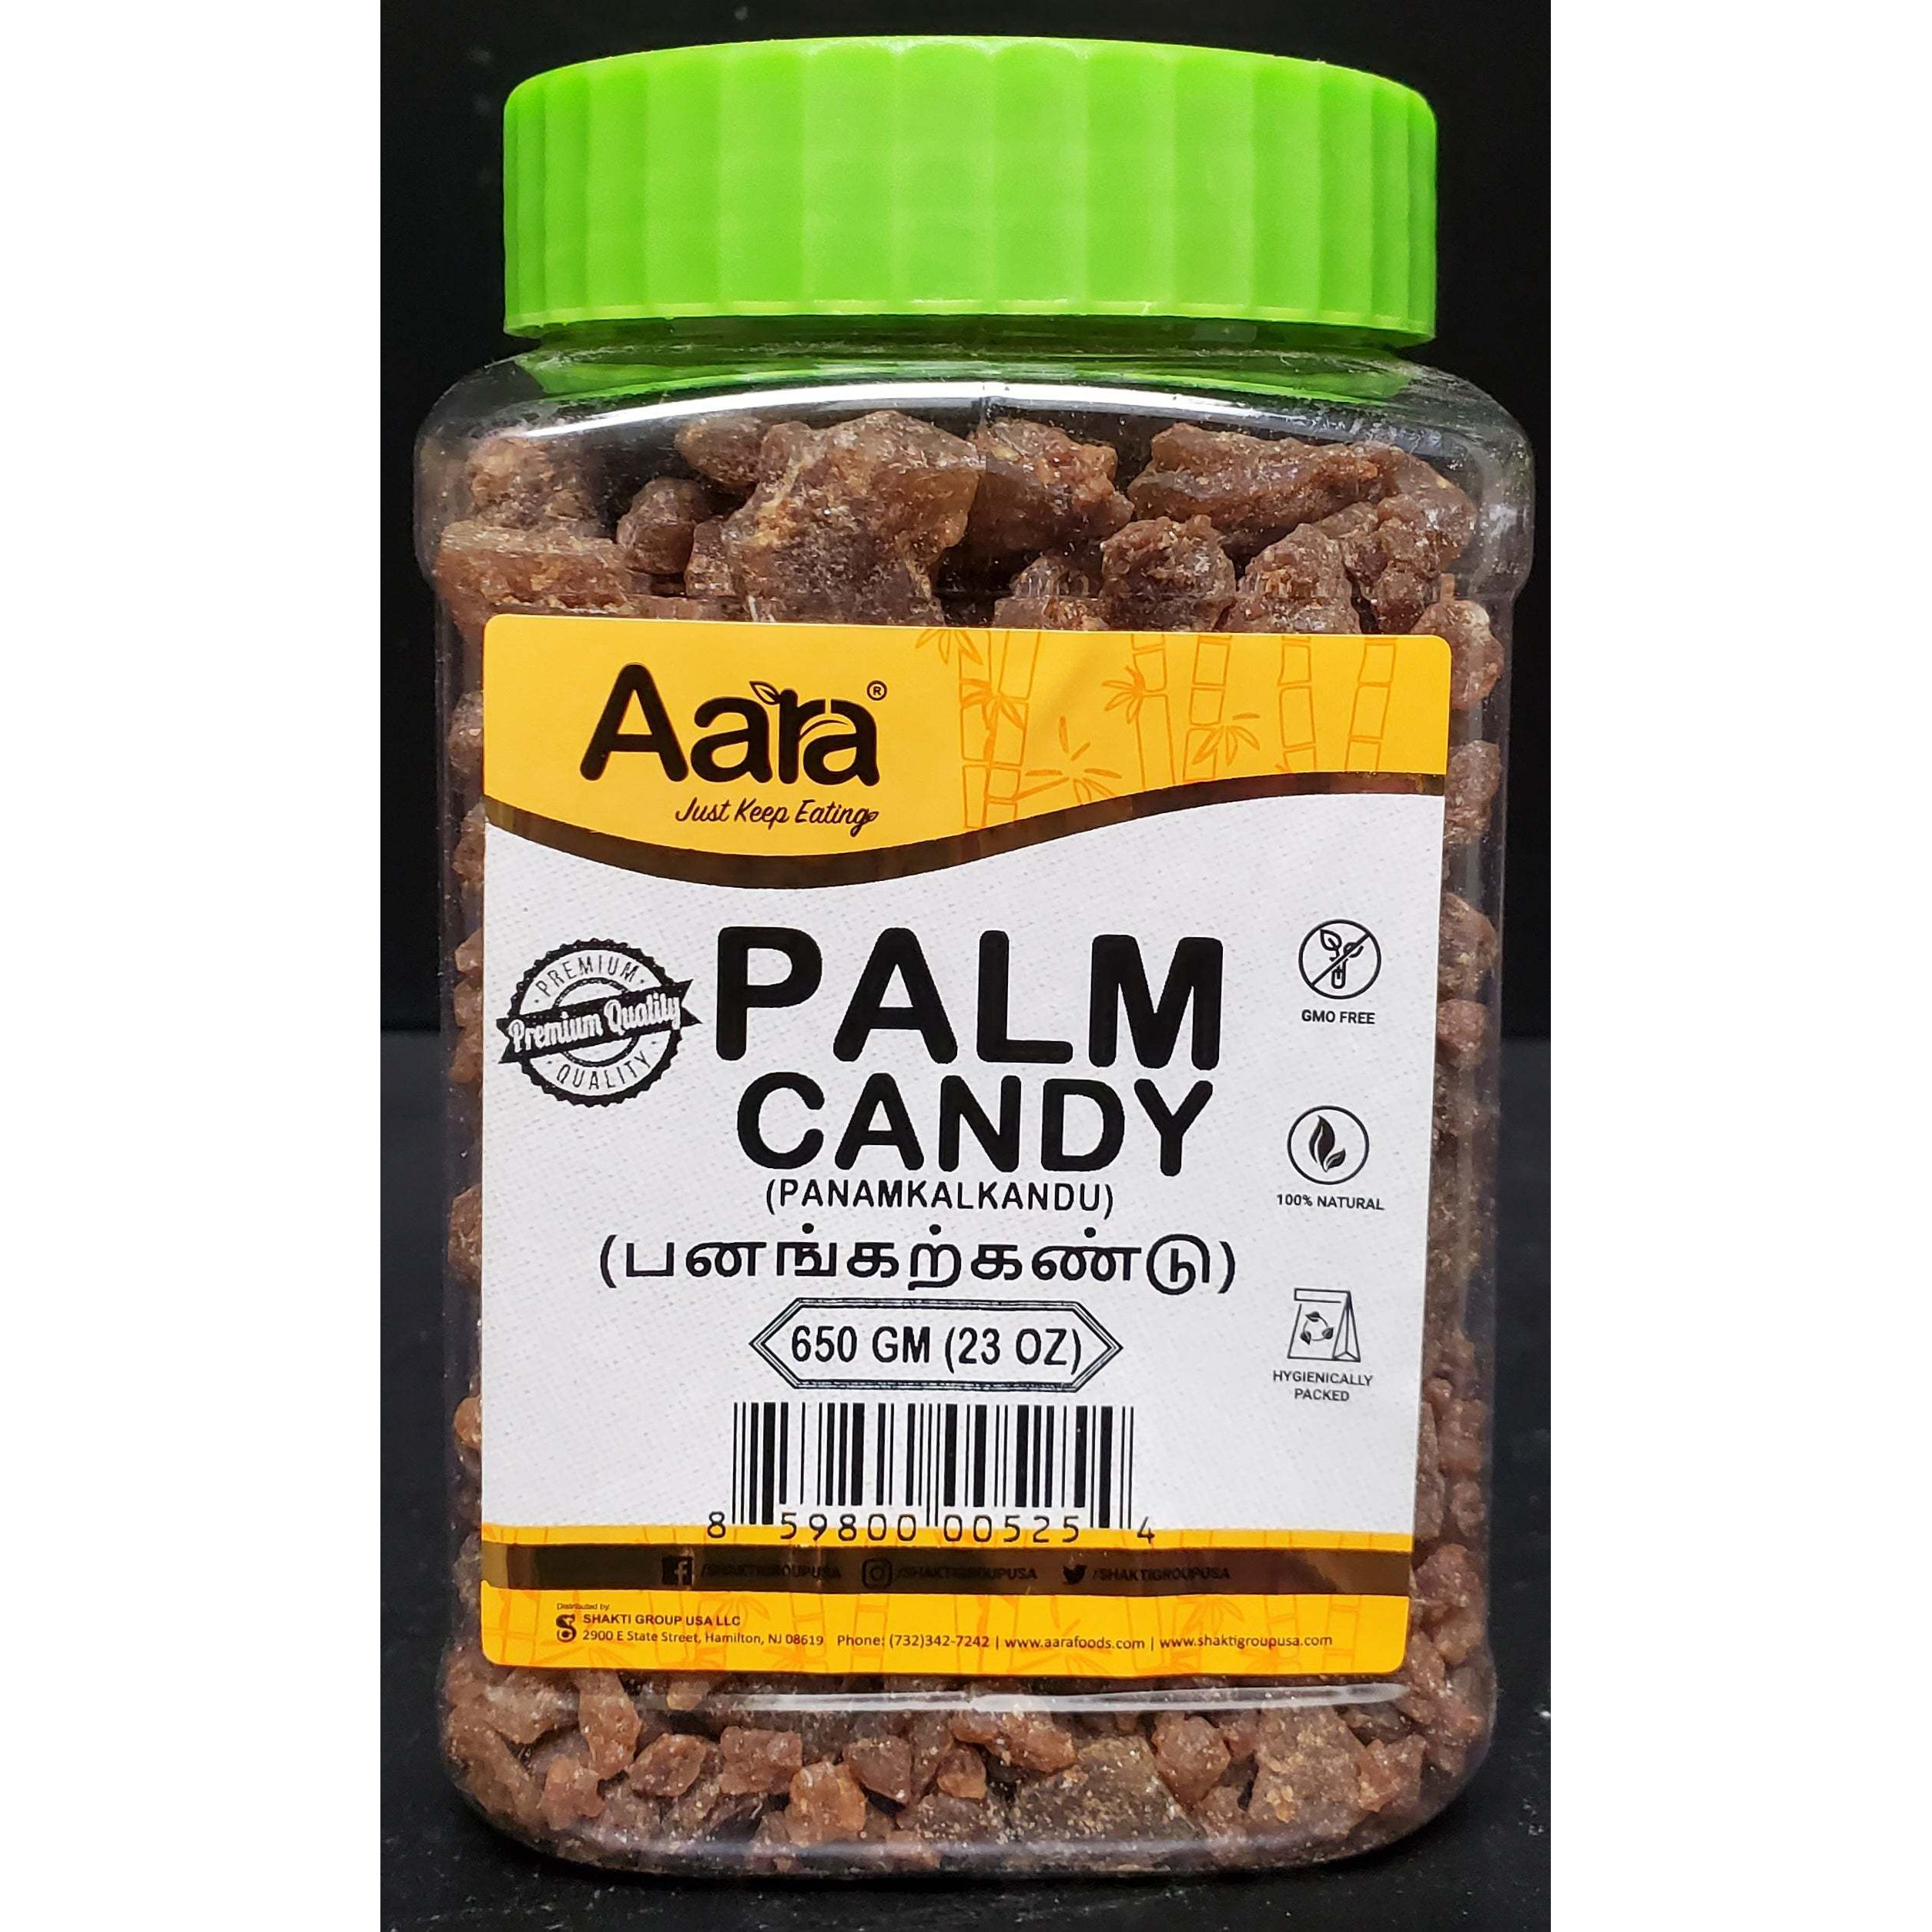 Aara Palm Candy (Panamkalkandu) - 23 Oz